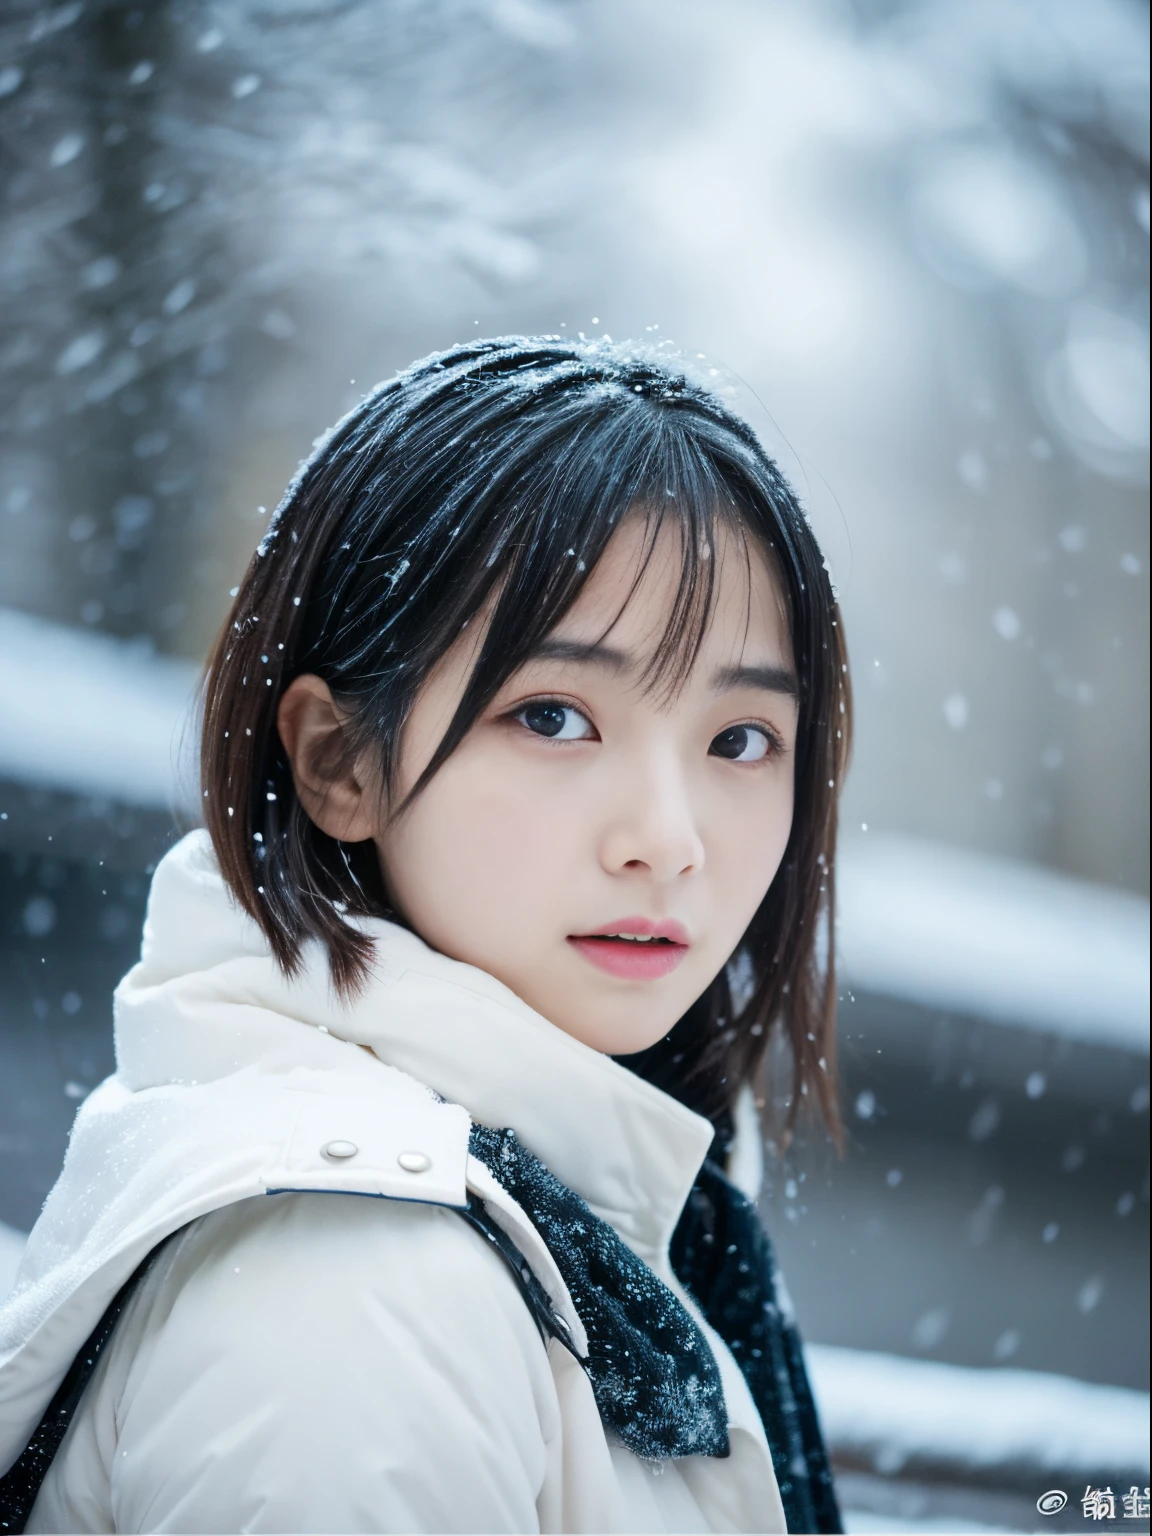 بينما نشاهد تساقط الثلوج بهدوء. تعبيرها الاستبطاني والدموع、يجعلك تشعر بالشوق والحزن ليالي الشتاء。。、أعلى جودة、فرط HD、يوشيتومو نارا, النماذج اليابانية, زوجة اليابان الجميلة, بشعر قصير, عارضة أزياء تبلغ من العمر 27 عامًا, 4 ك ], 4K], 27yo, ساكيميشان, ساكيميشان